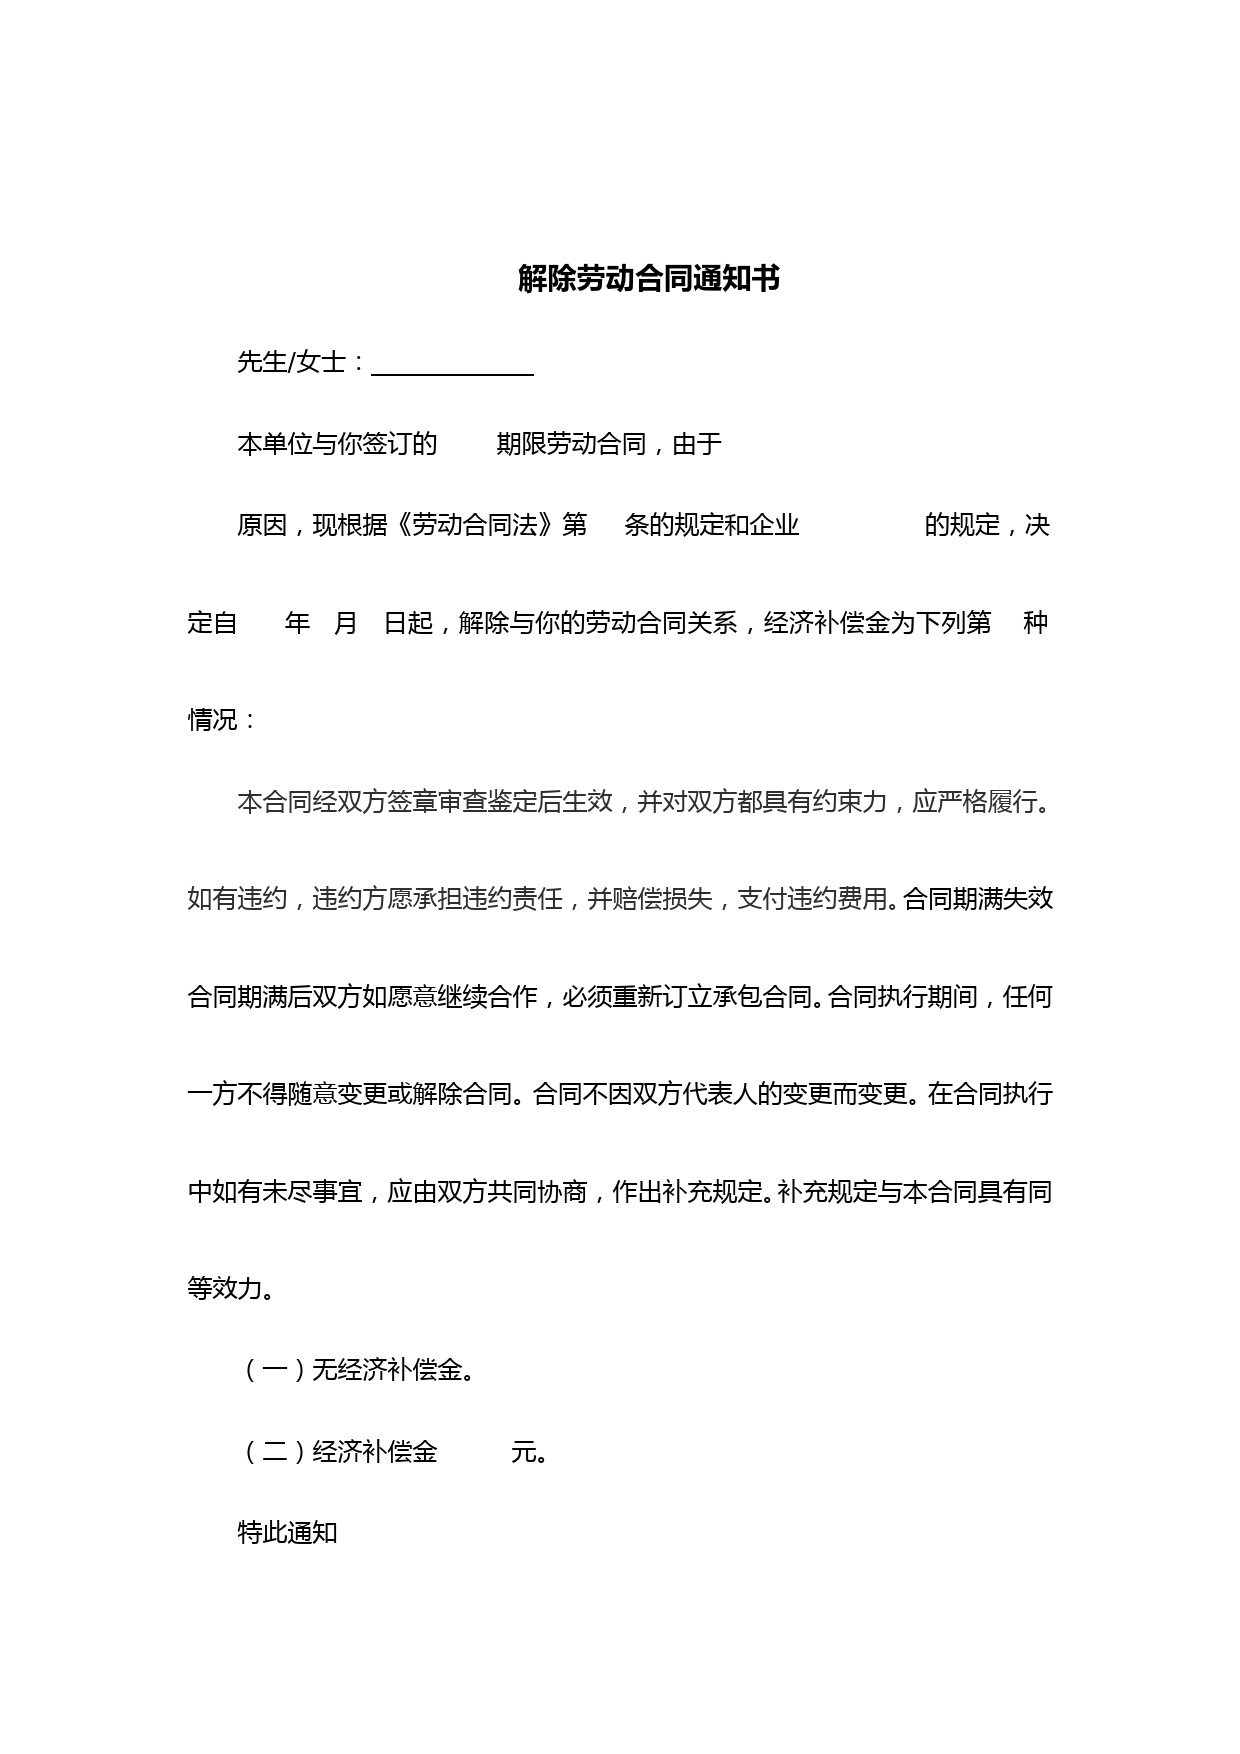 天津市人力资源和社会保障局制解除合同通知书(最新修订)